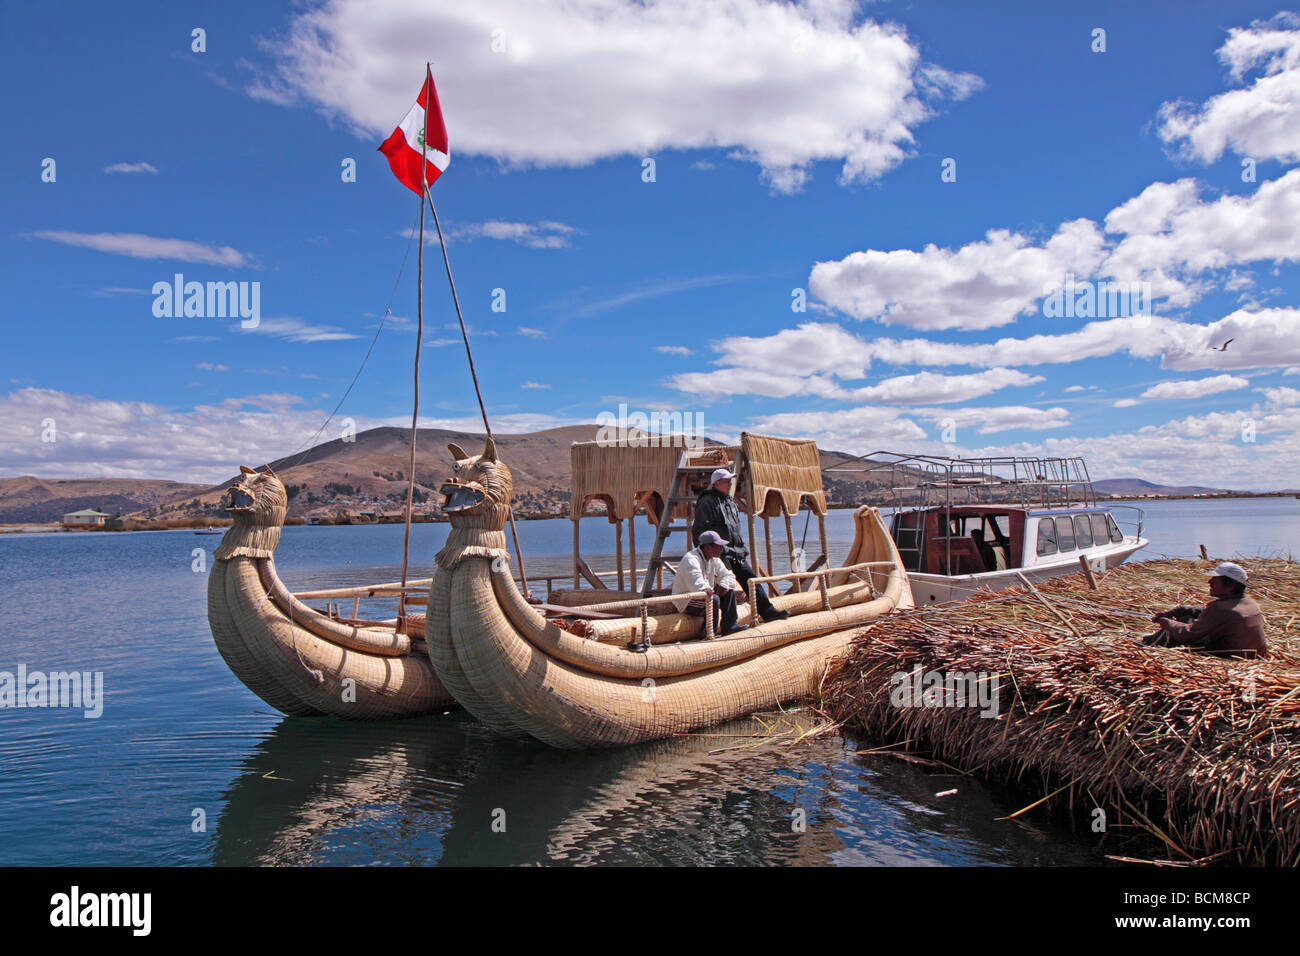 Fait à partir de catamaran sur une île de reed Uro, Lac Titicaca, Puno, Pérou Banque D'Images